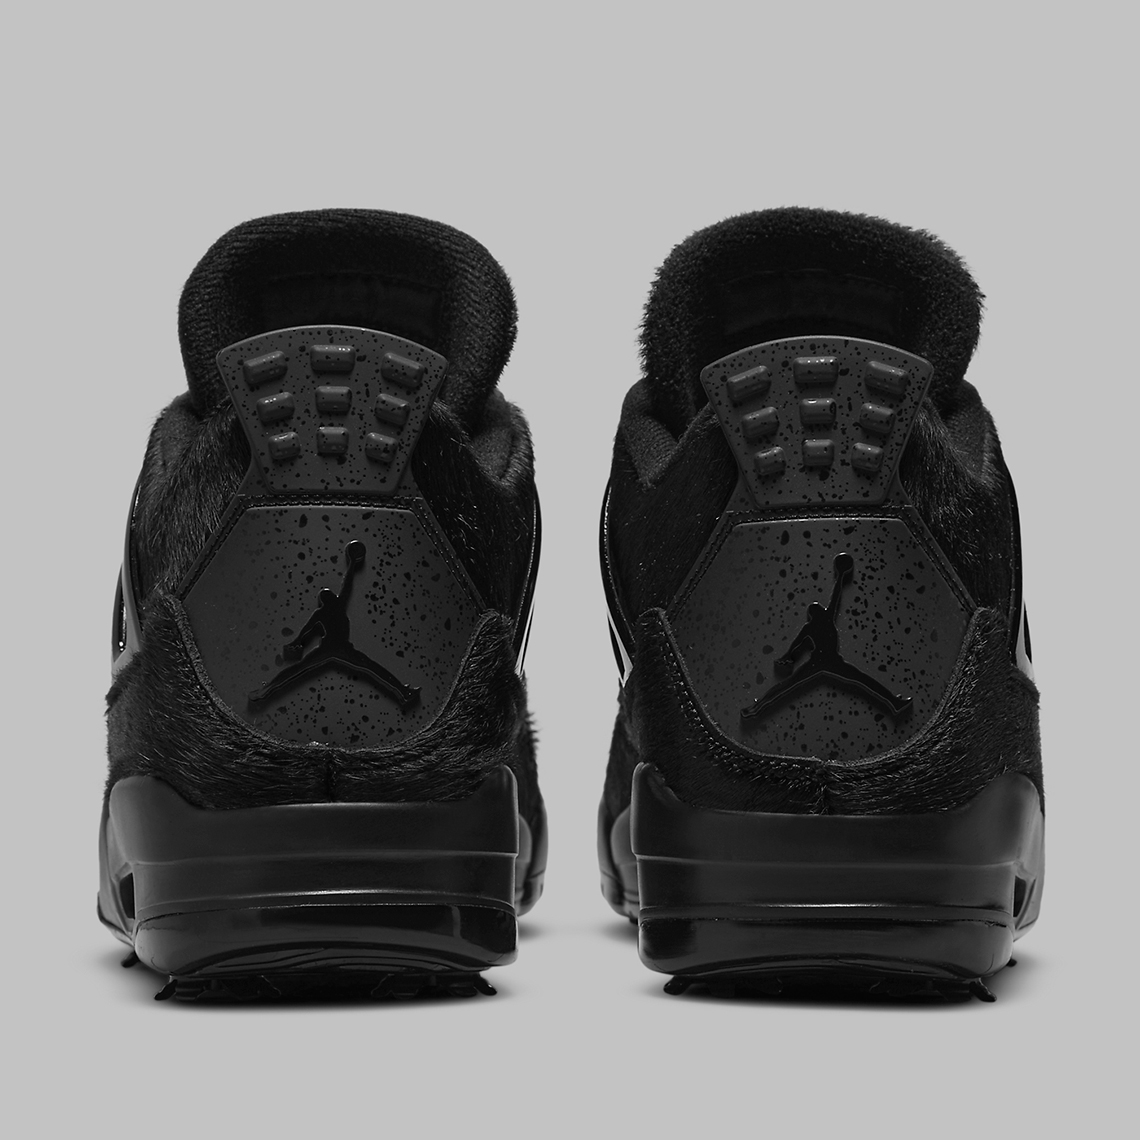 Air Jordan 4 Golf Black Cat Cu9981 001 Release Date 2